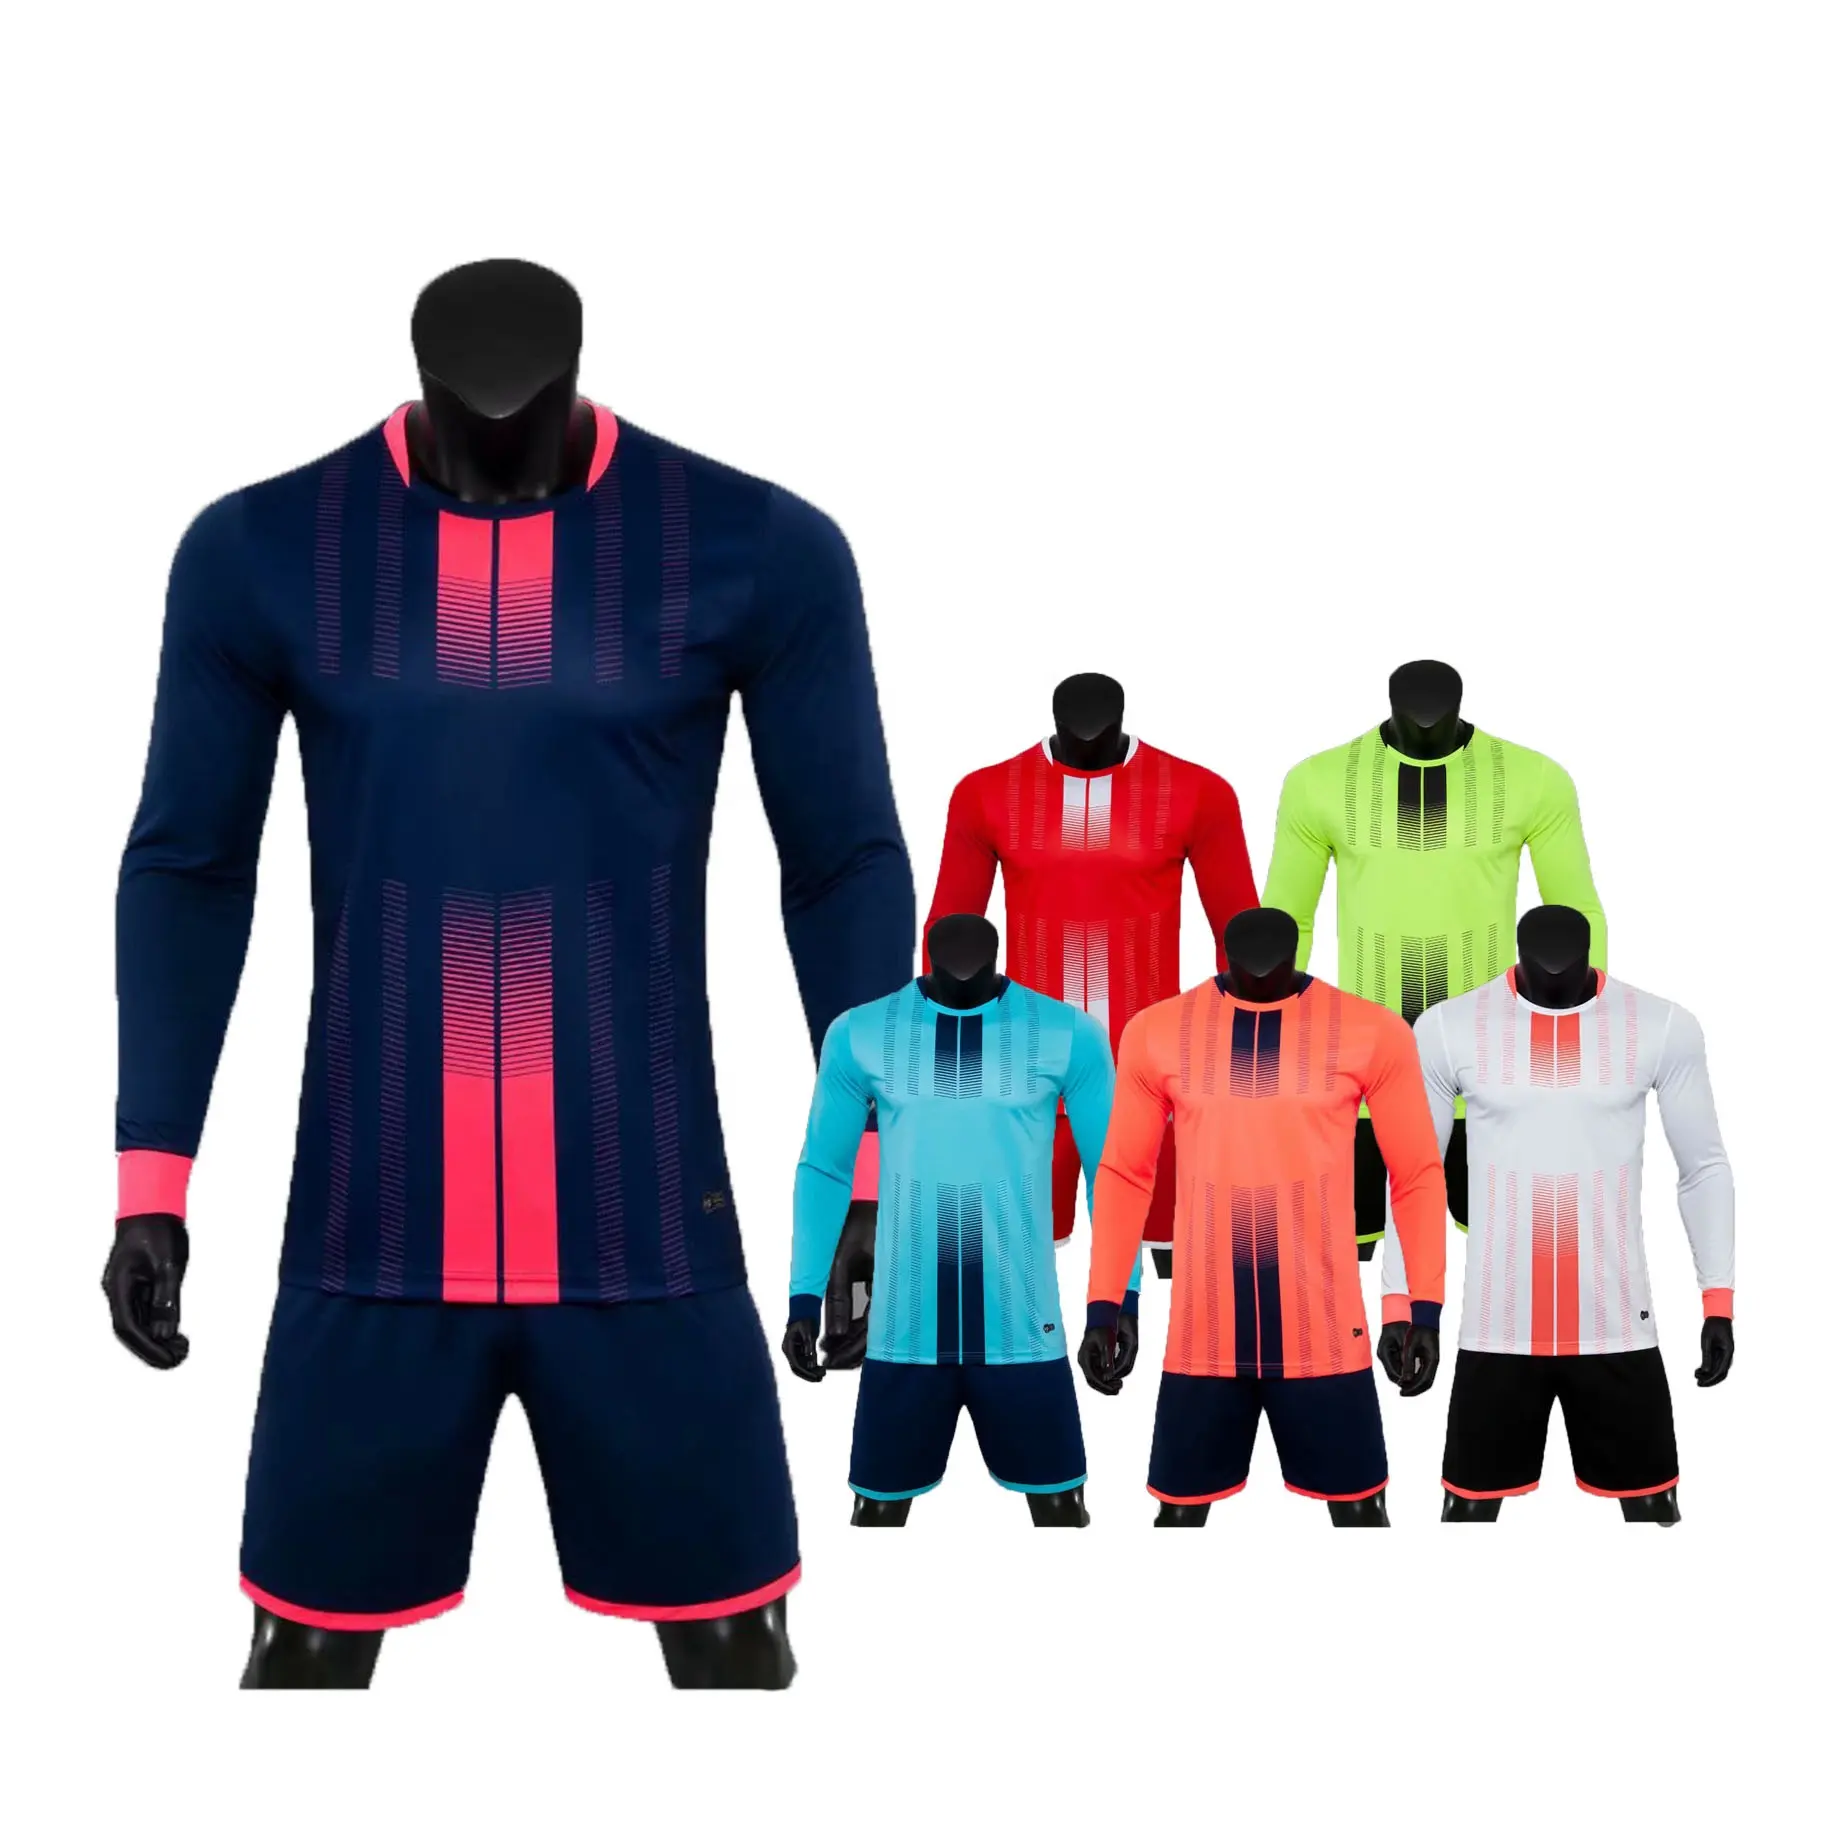 Encuentre mejor fabricante de uniformes futbol manga larga y uniformes futbol manga larga para el mercado de hablantes de spanish en alibaba.com